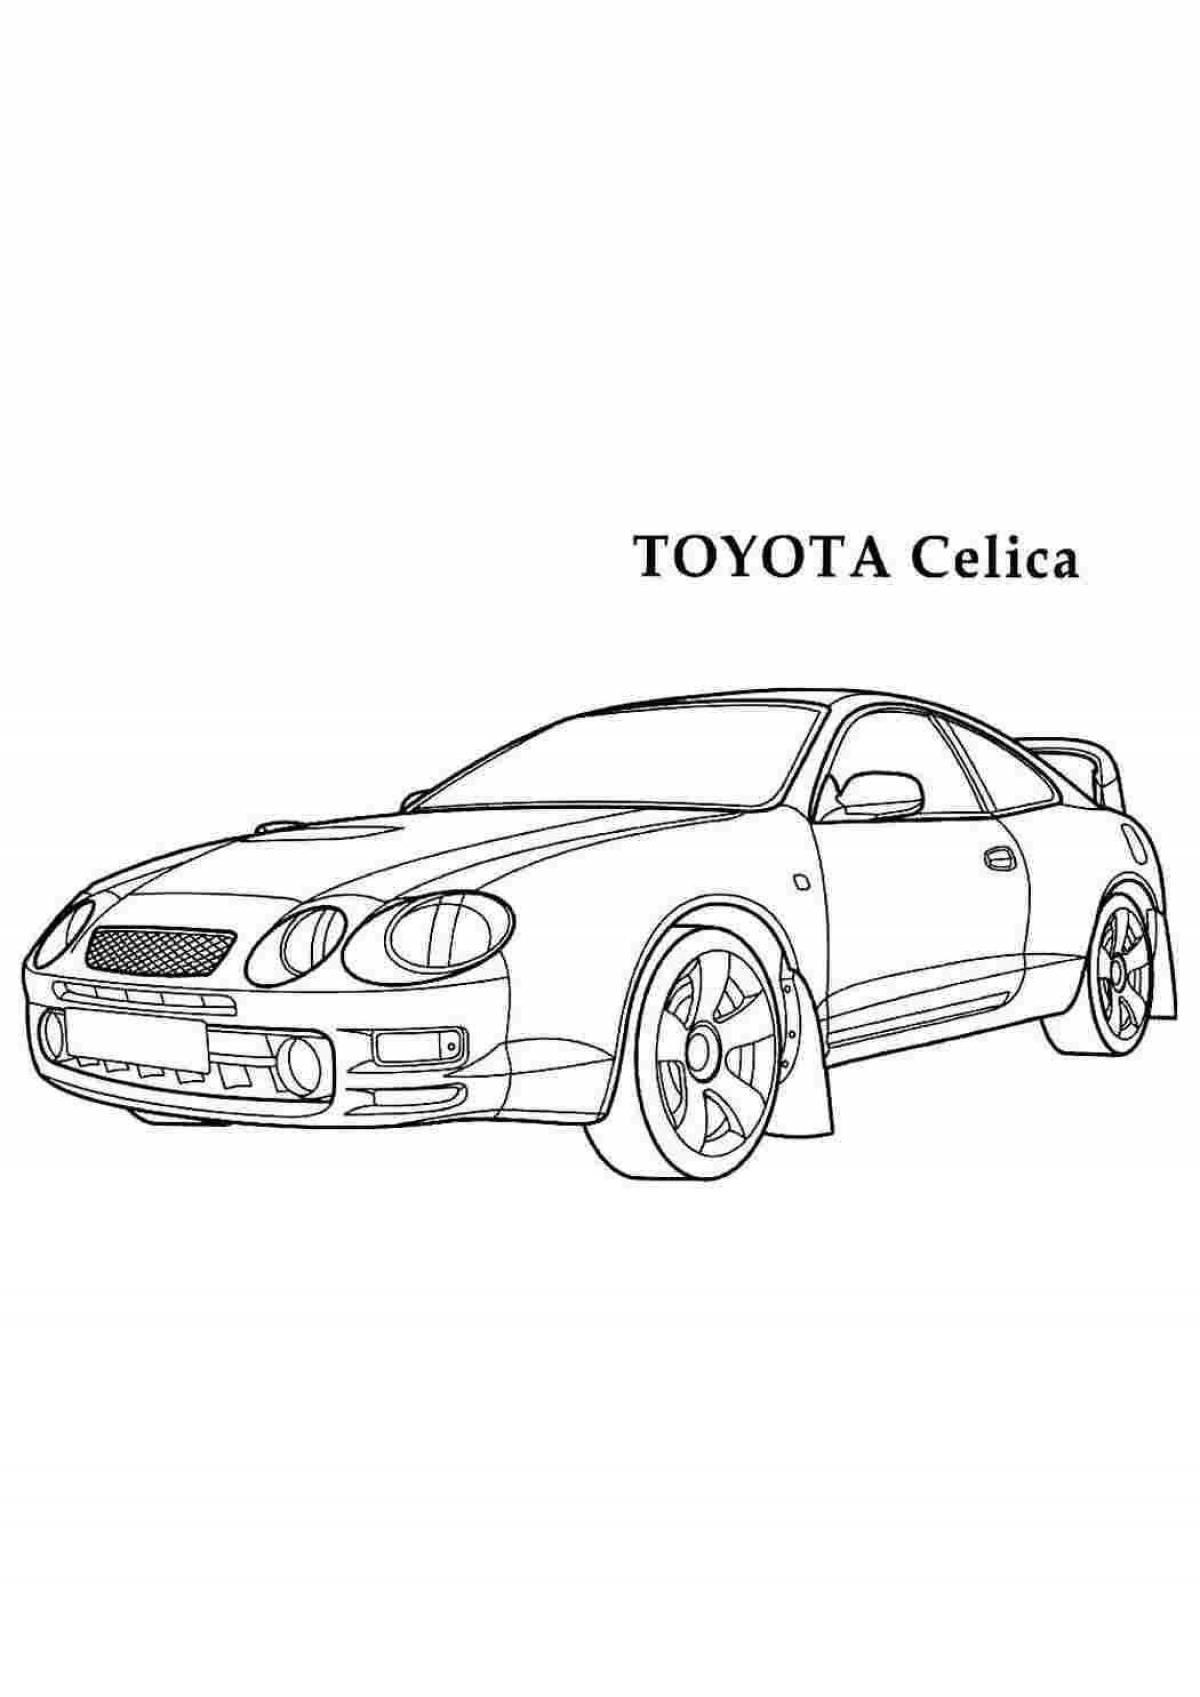 Toyota celica #20